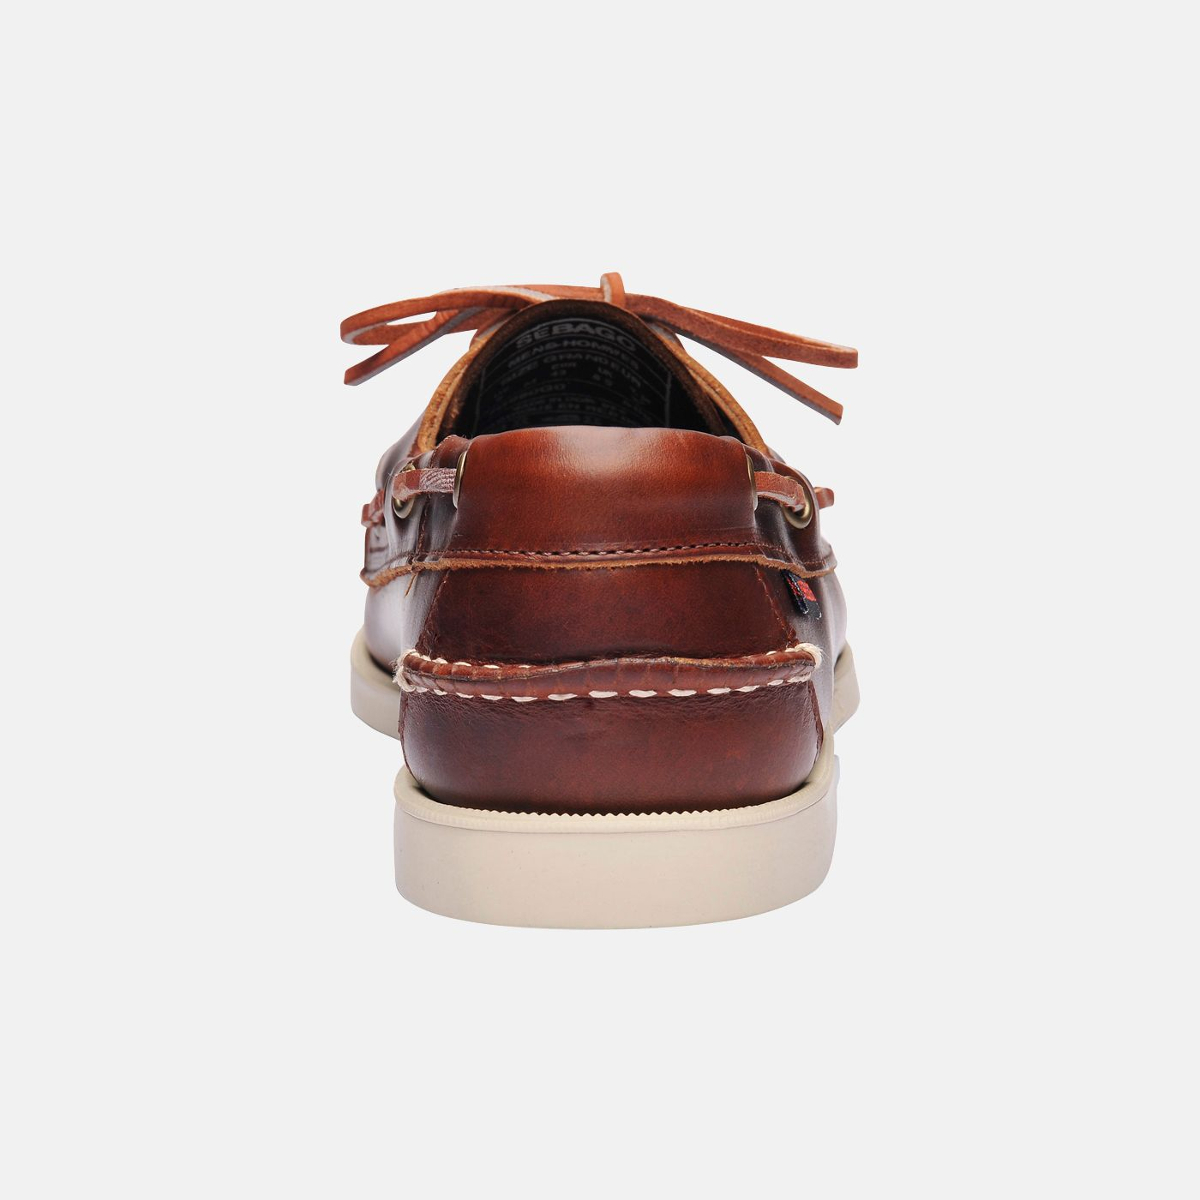 Sebago Docksides bootschoen heren brown oiled waxy leather, maat EU 42 (US 8,5)